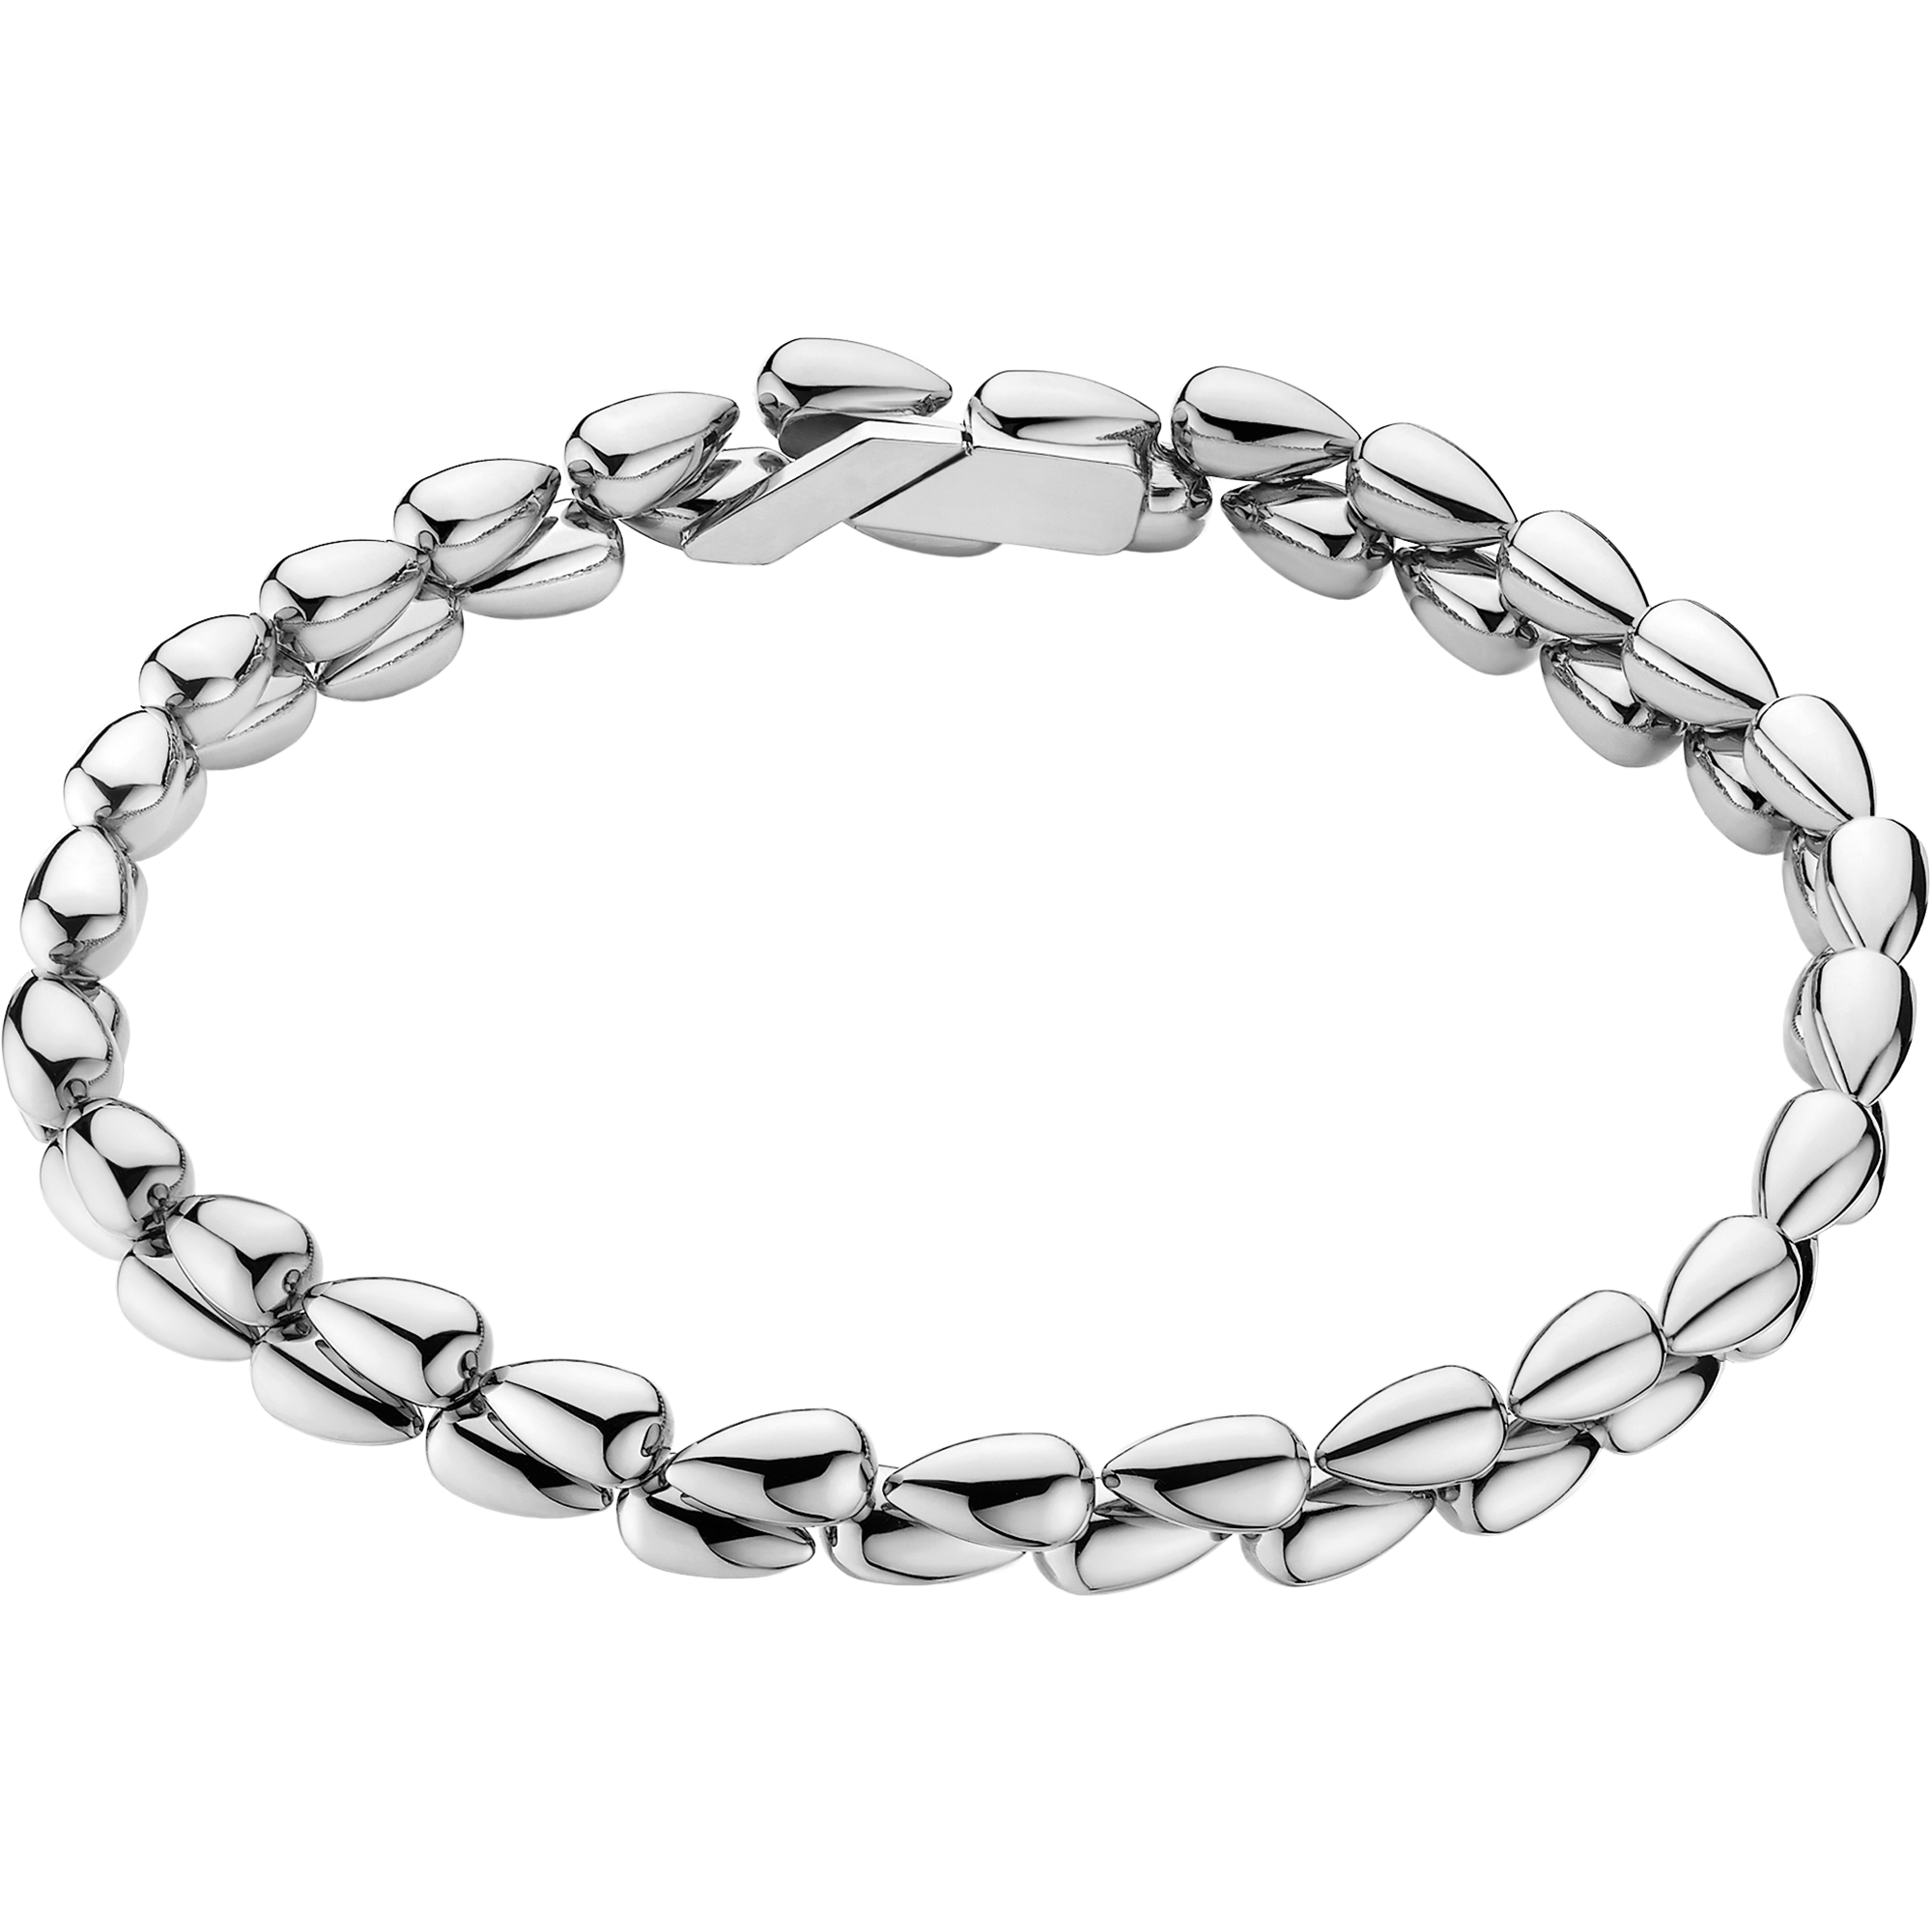 Omega Dewdrop Bracelet, Or blanc 18K - B602BC0000105